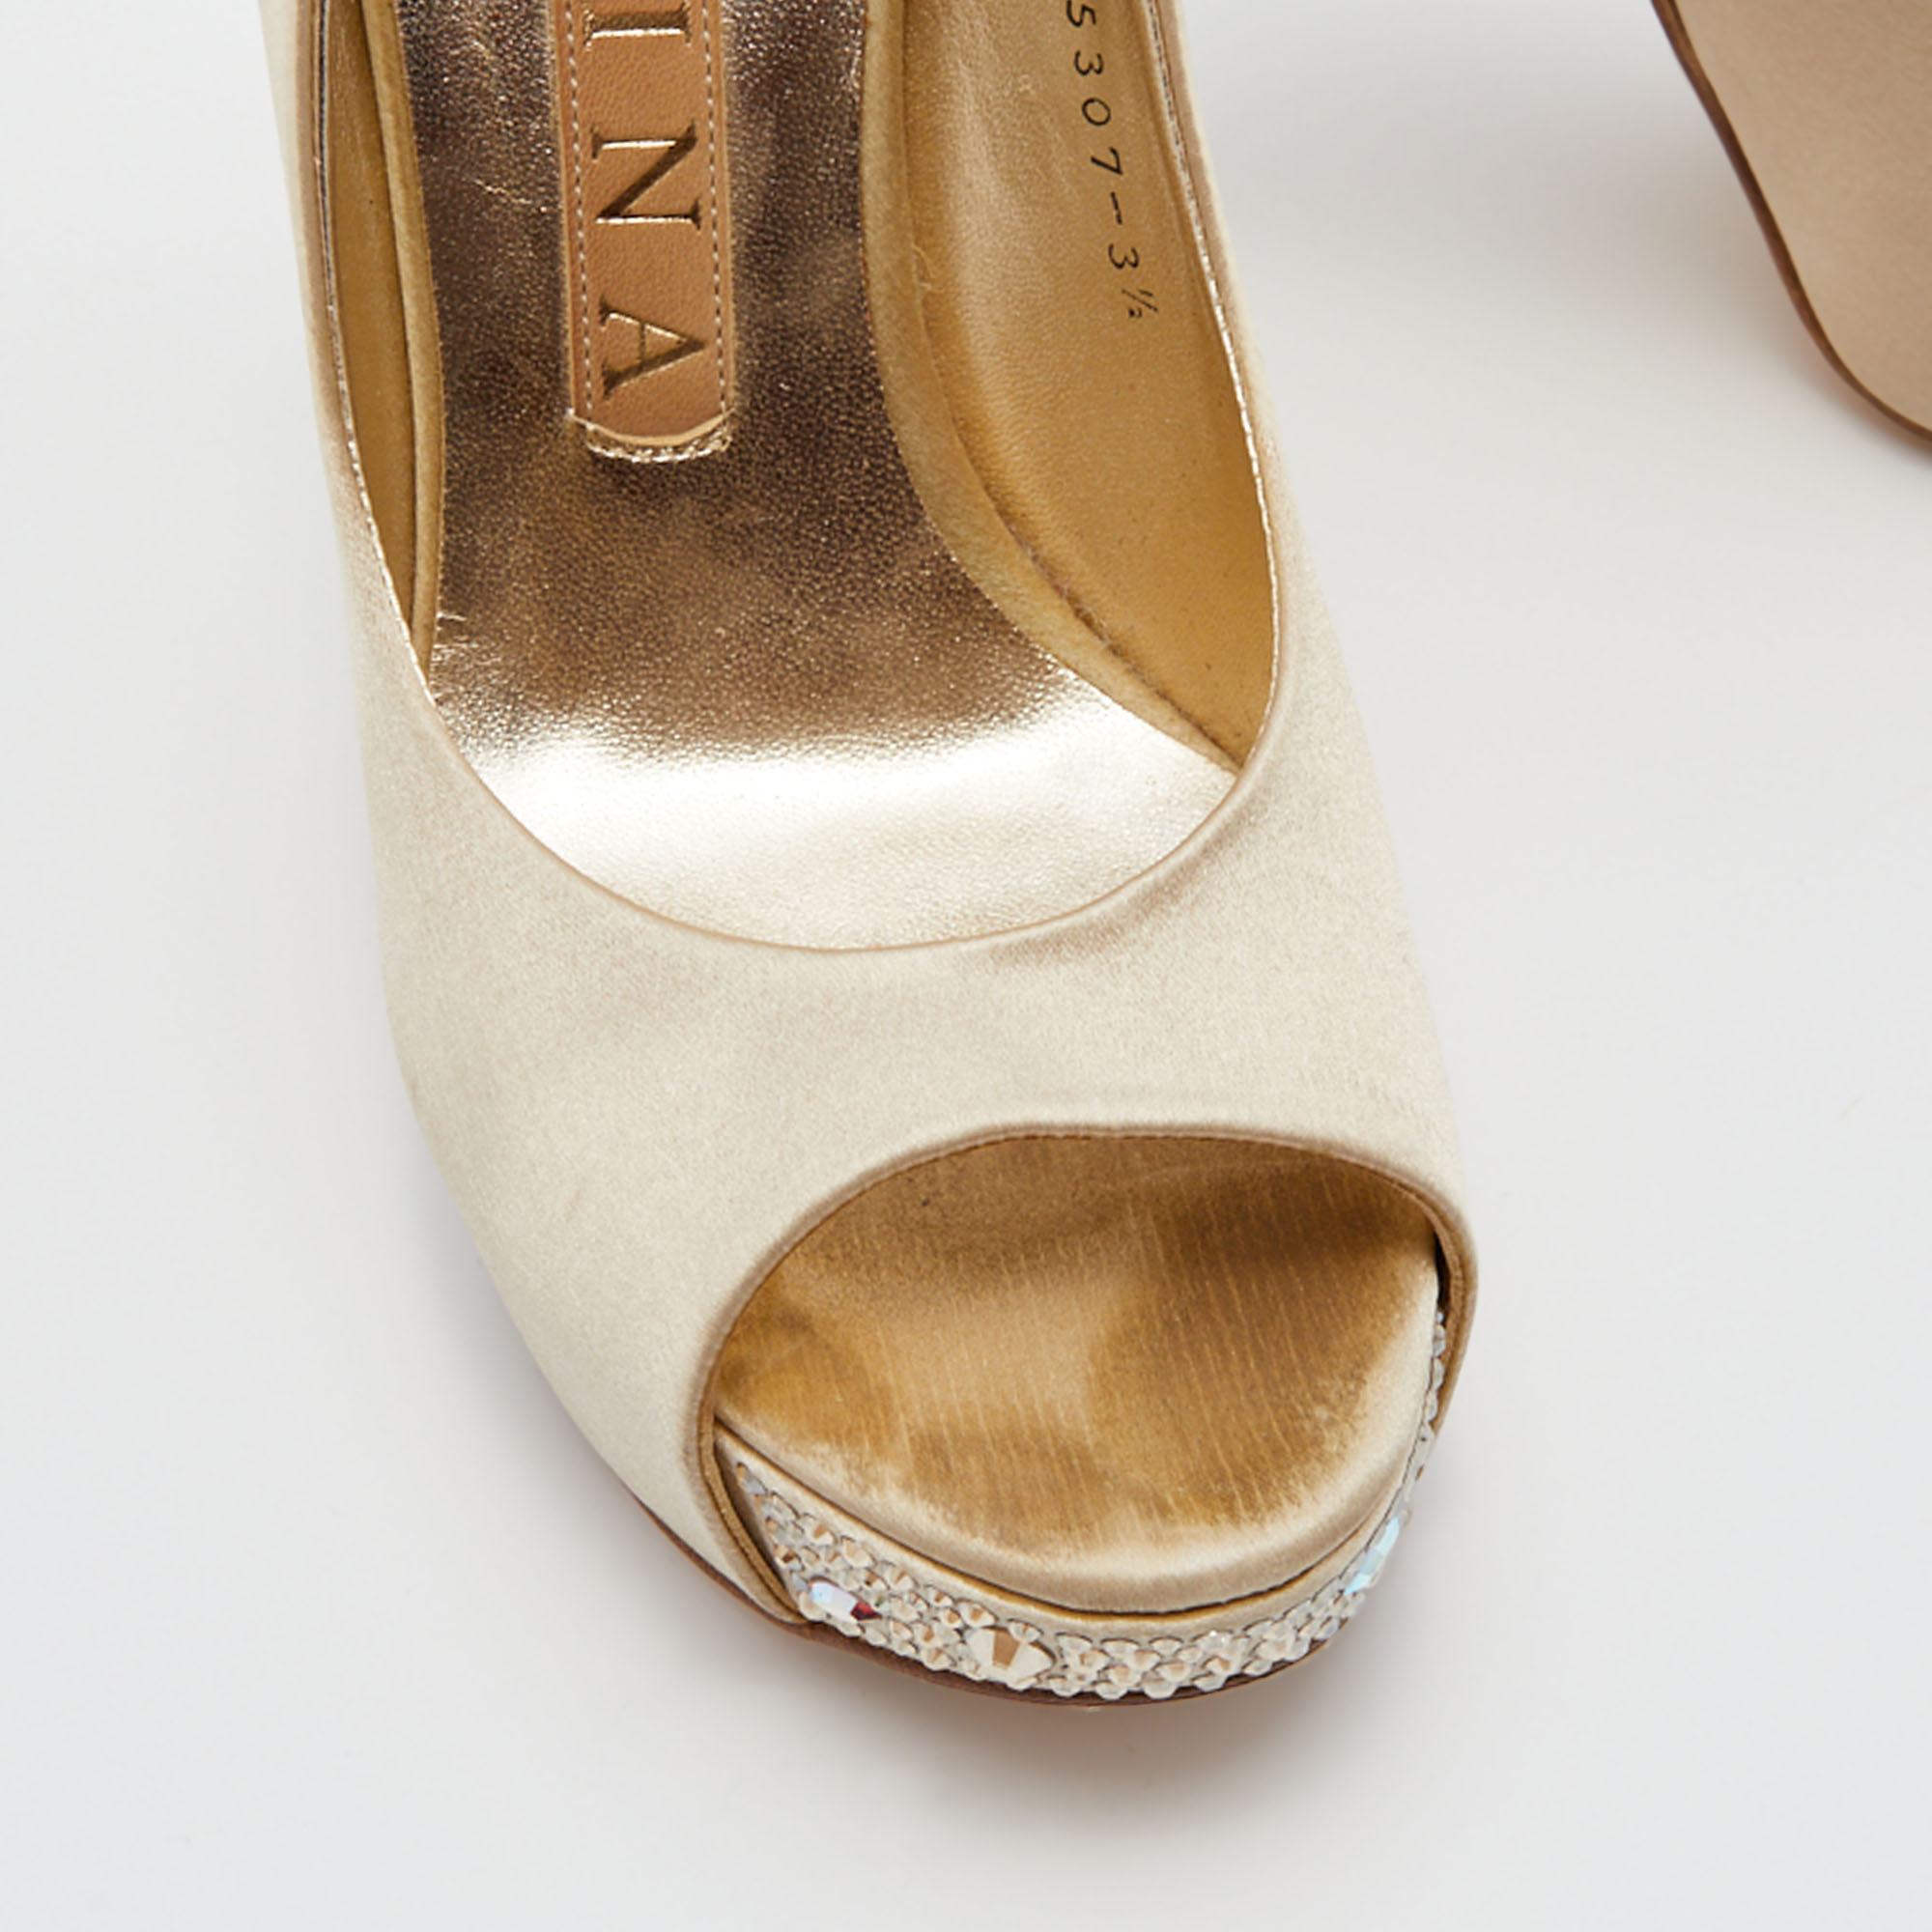 Gina Cream Satin Crystal Embellished Heel Open Toe Platform Pumps Size 36.5